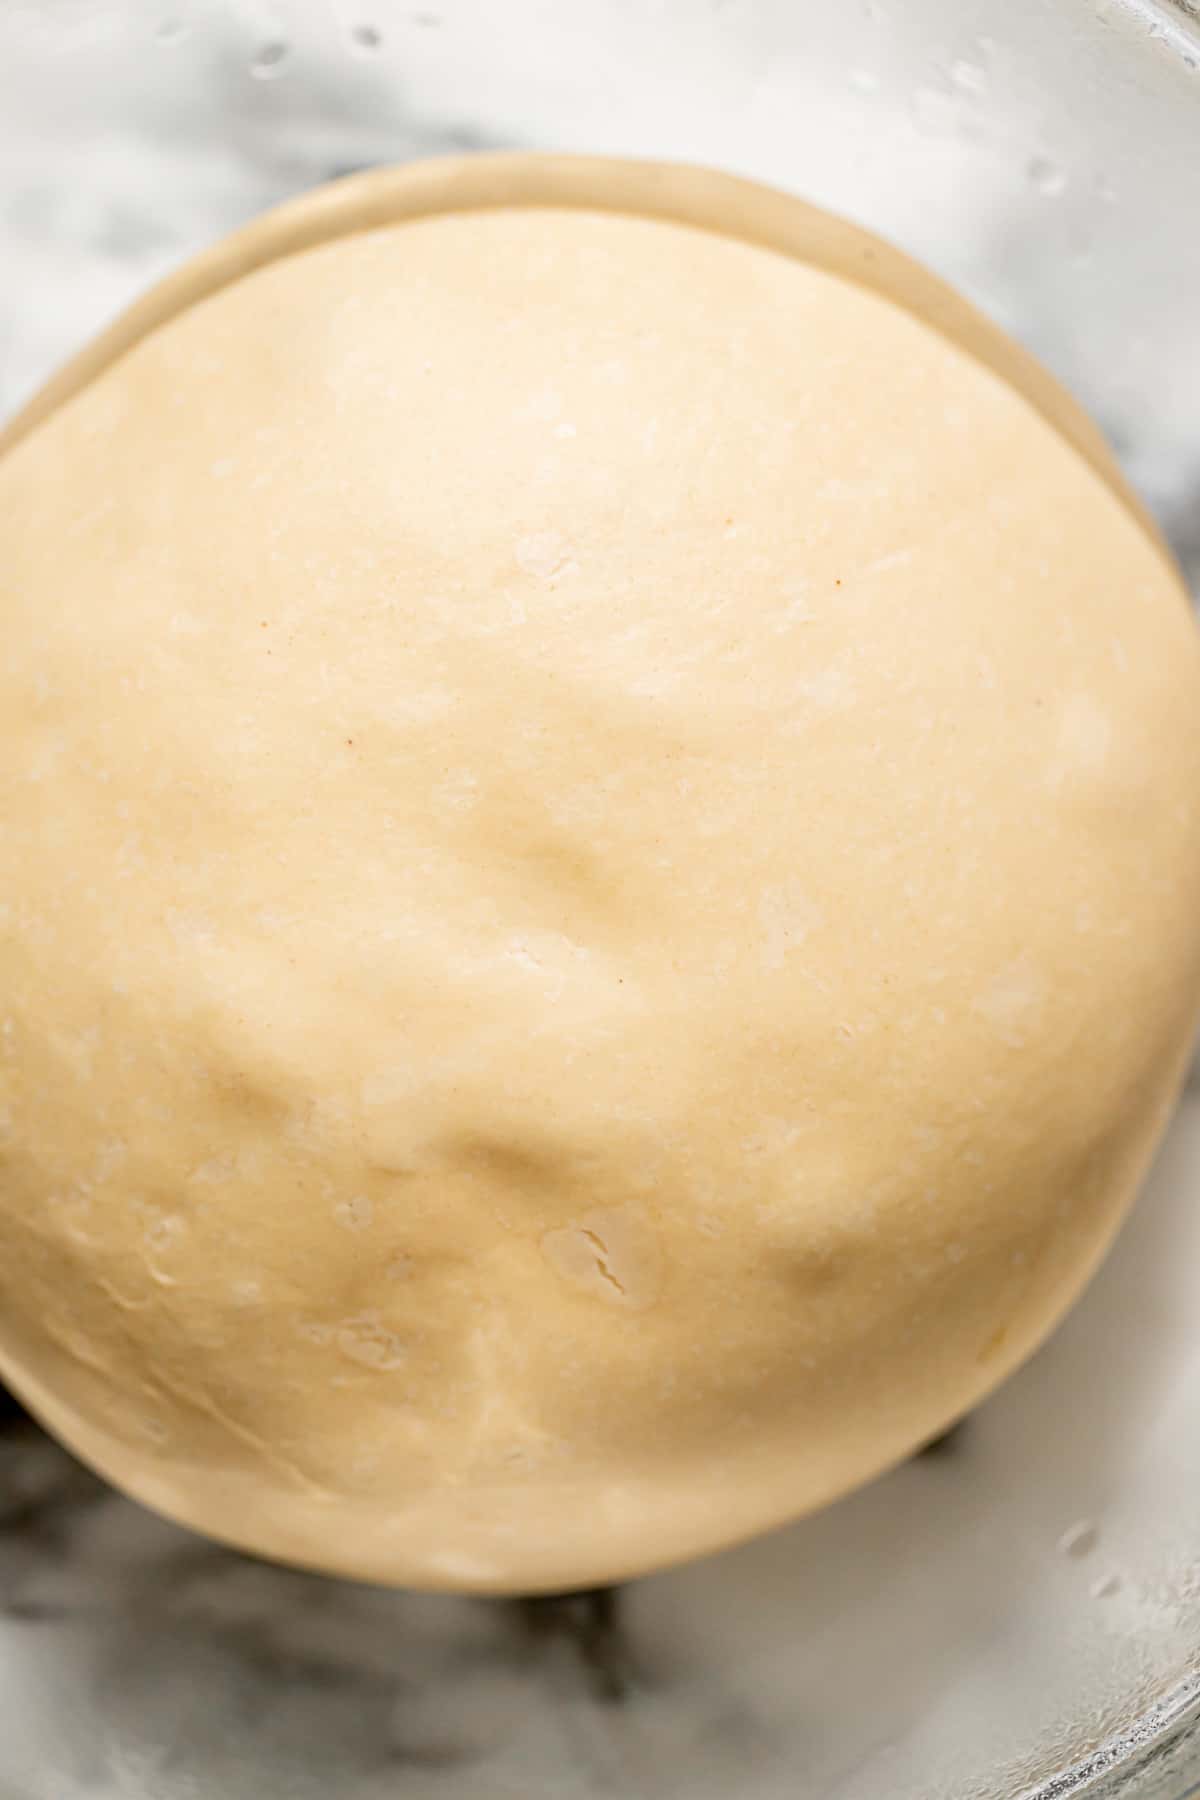 proofed brioche dough in bowl.